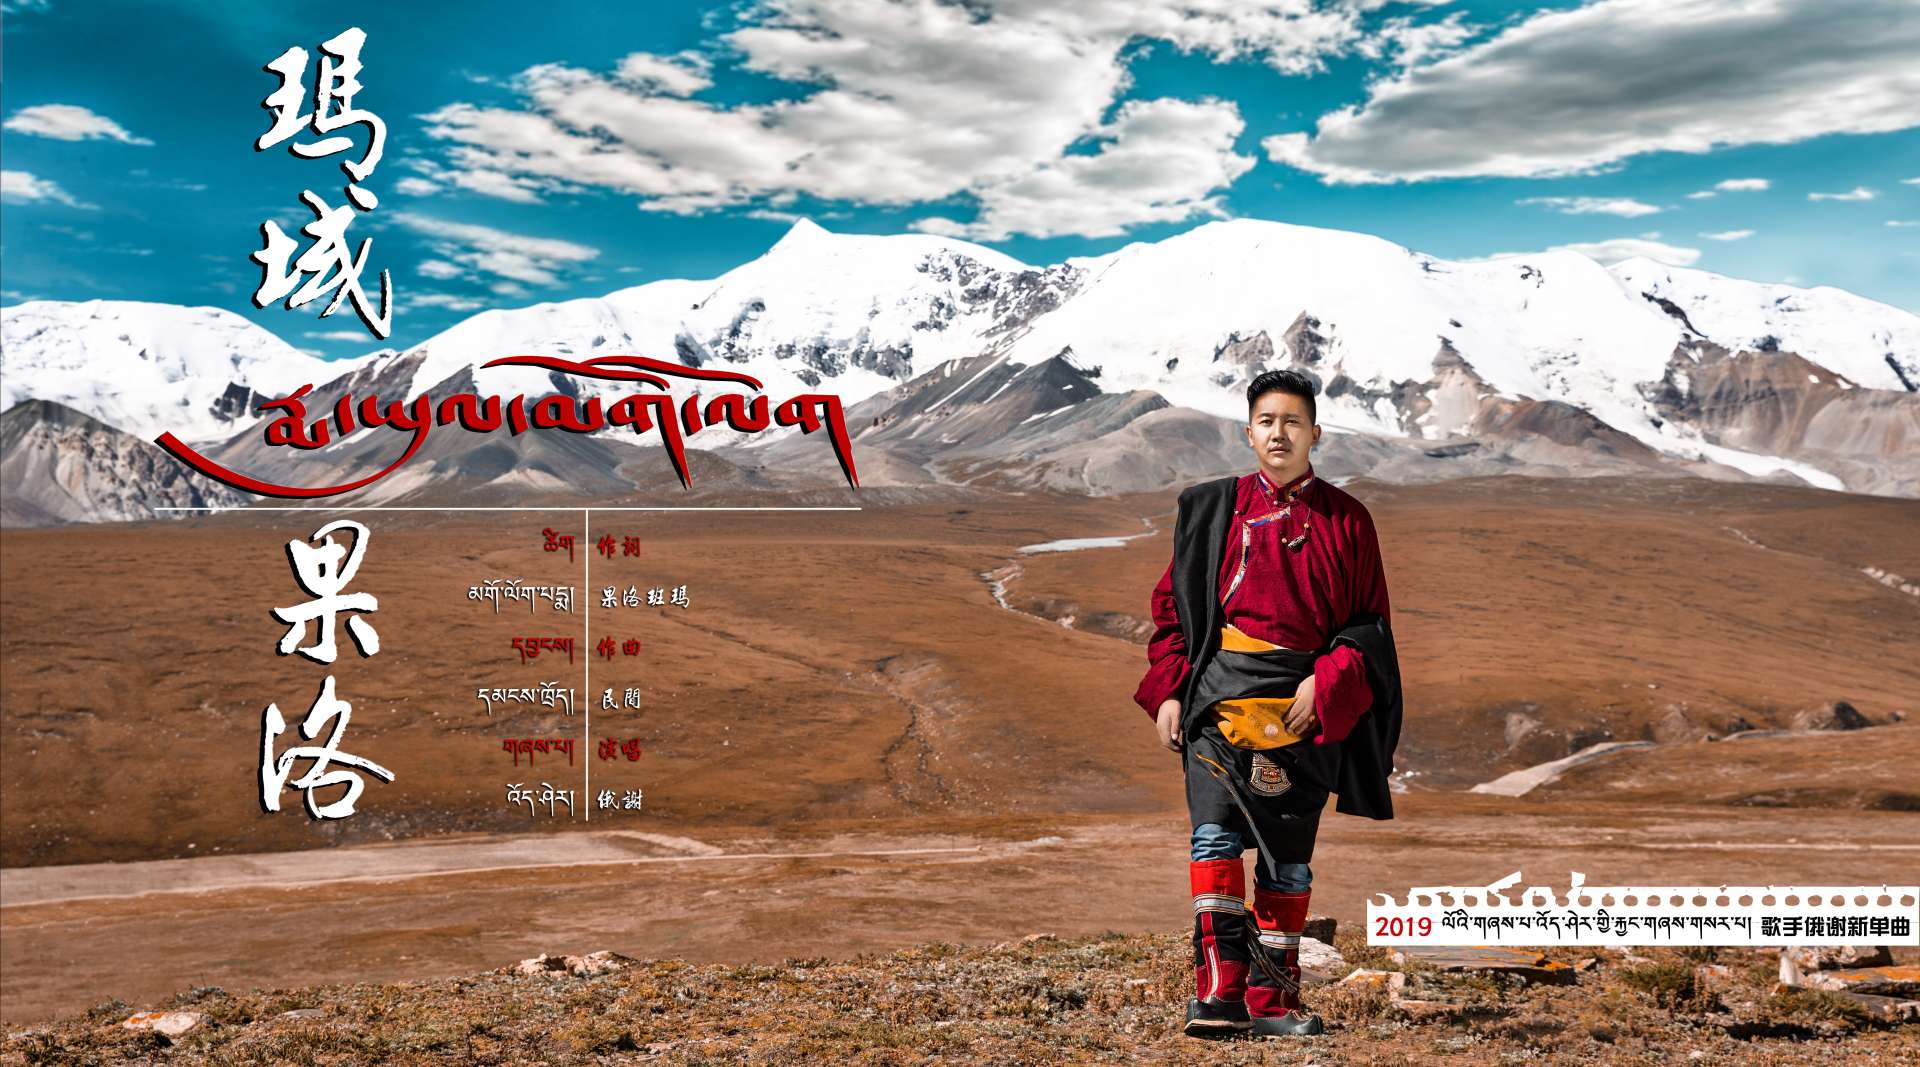 MV | 2019 藏族歌手“俄谢”新单曲《玛域果洛》